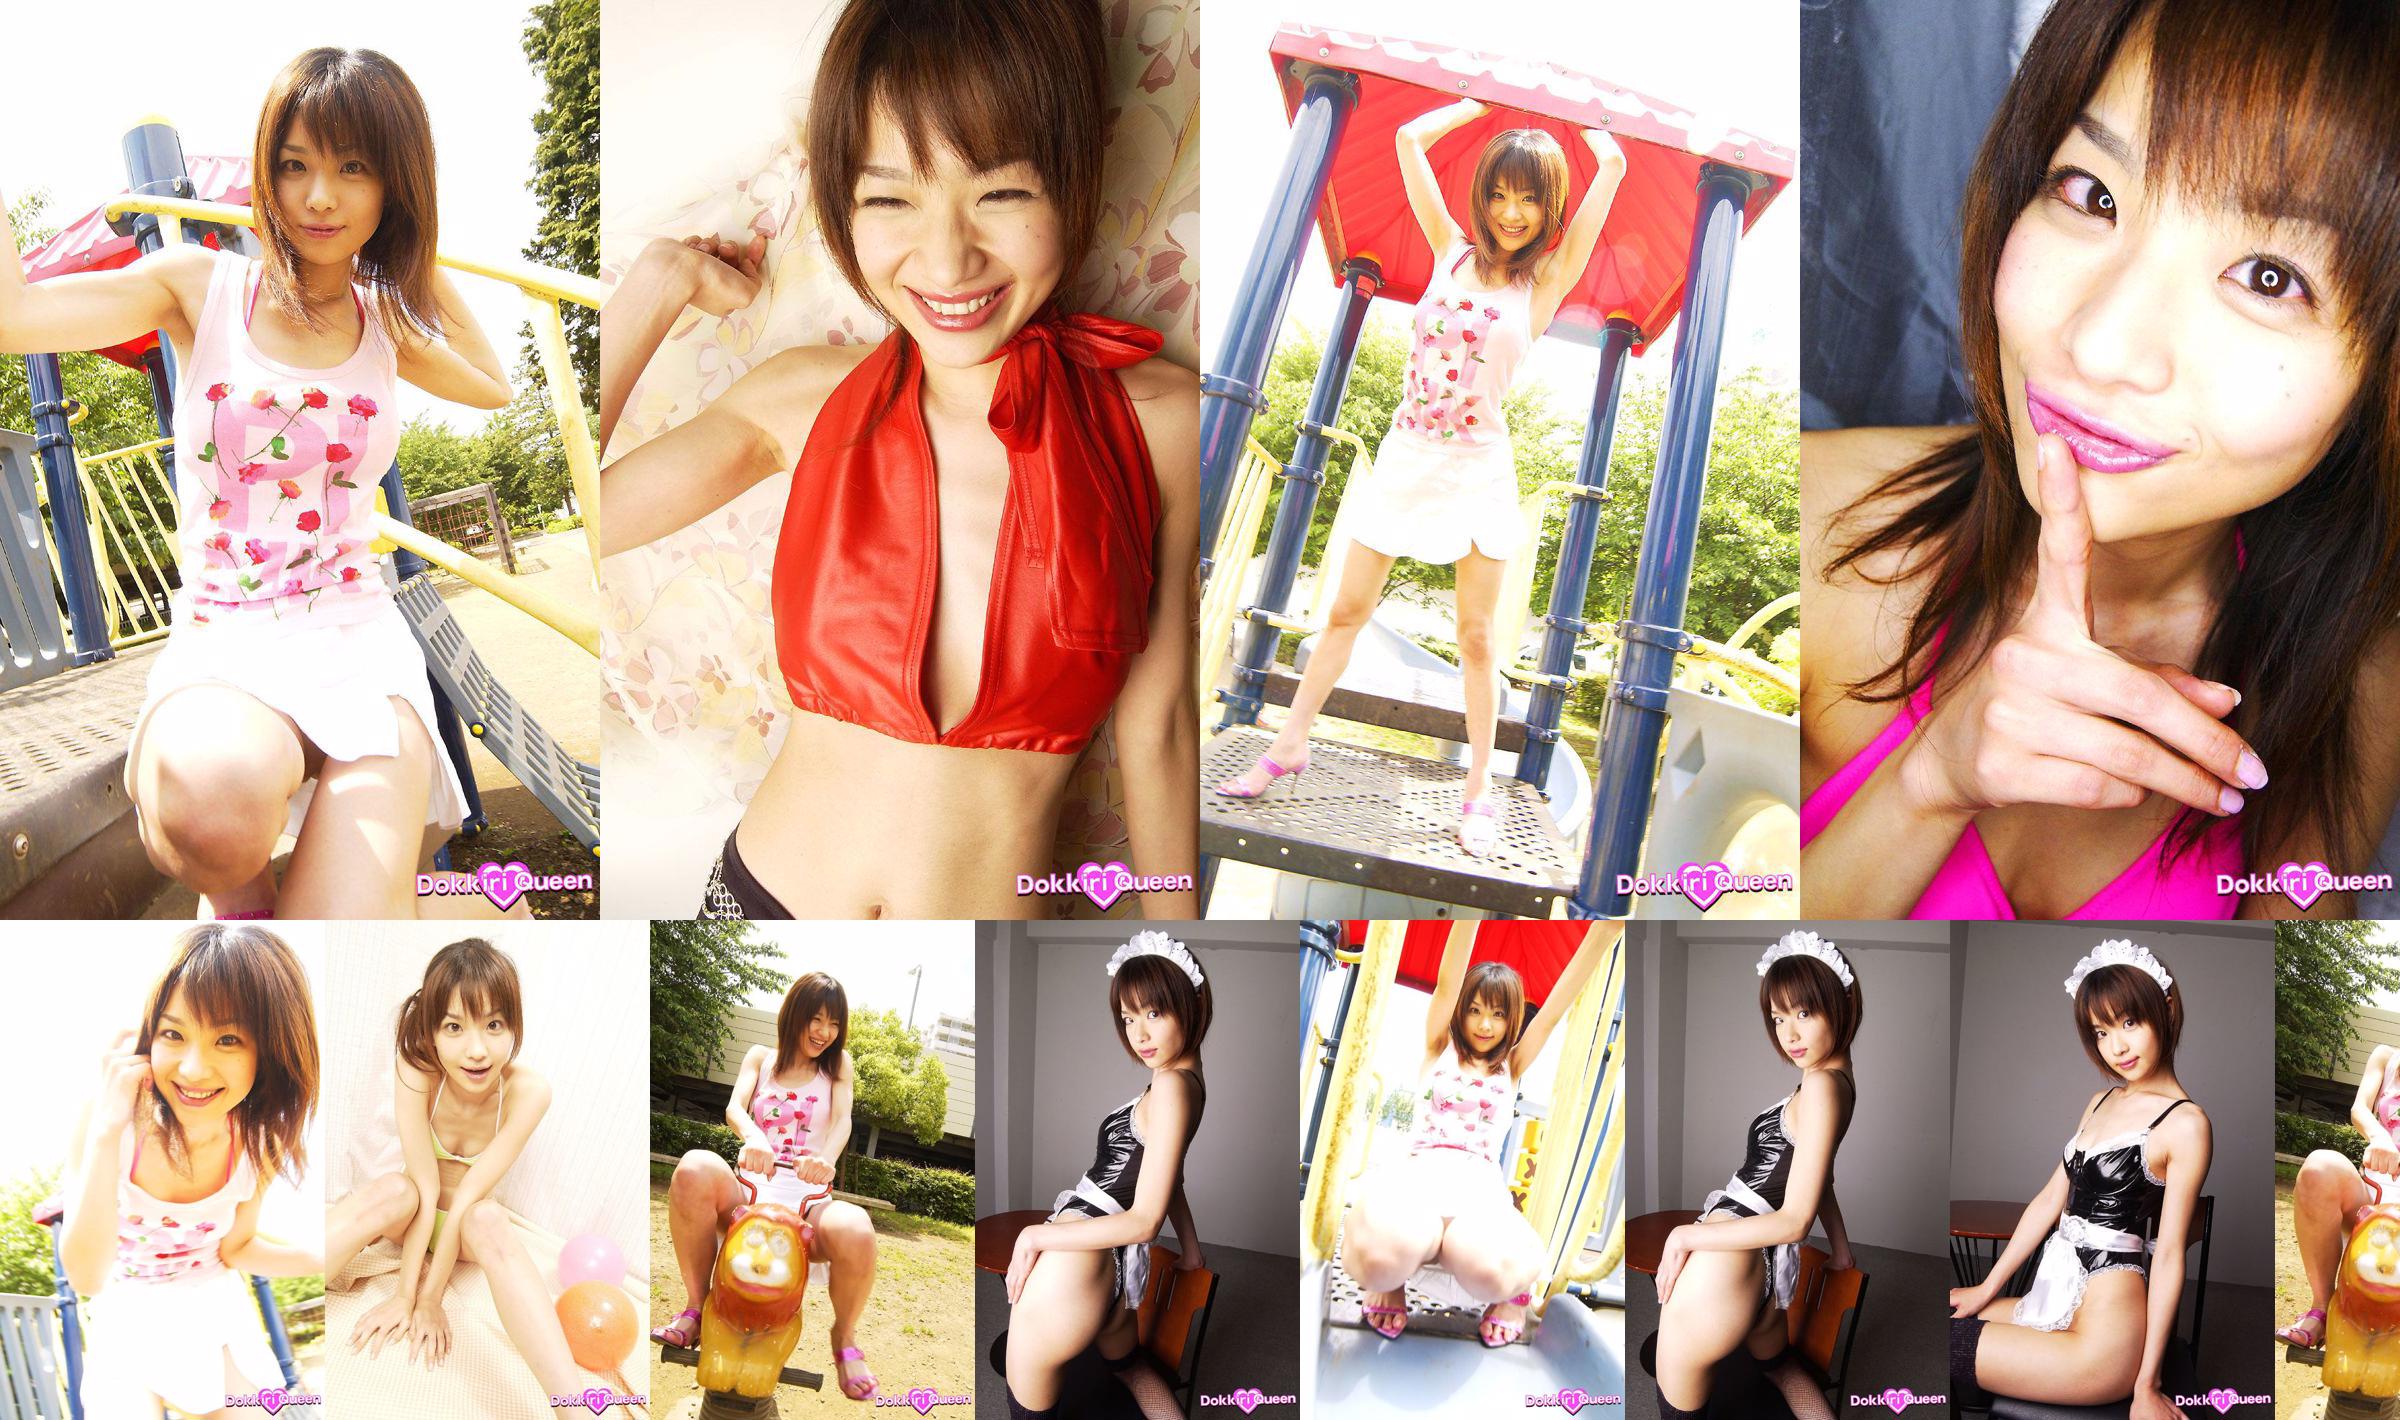 [X-City] Dokkiri Queen No.013 Aimi Aimi Profile No.f318c2 หน้า 1